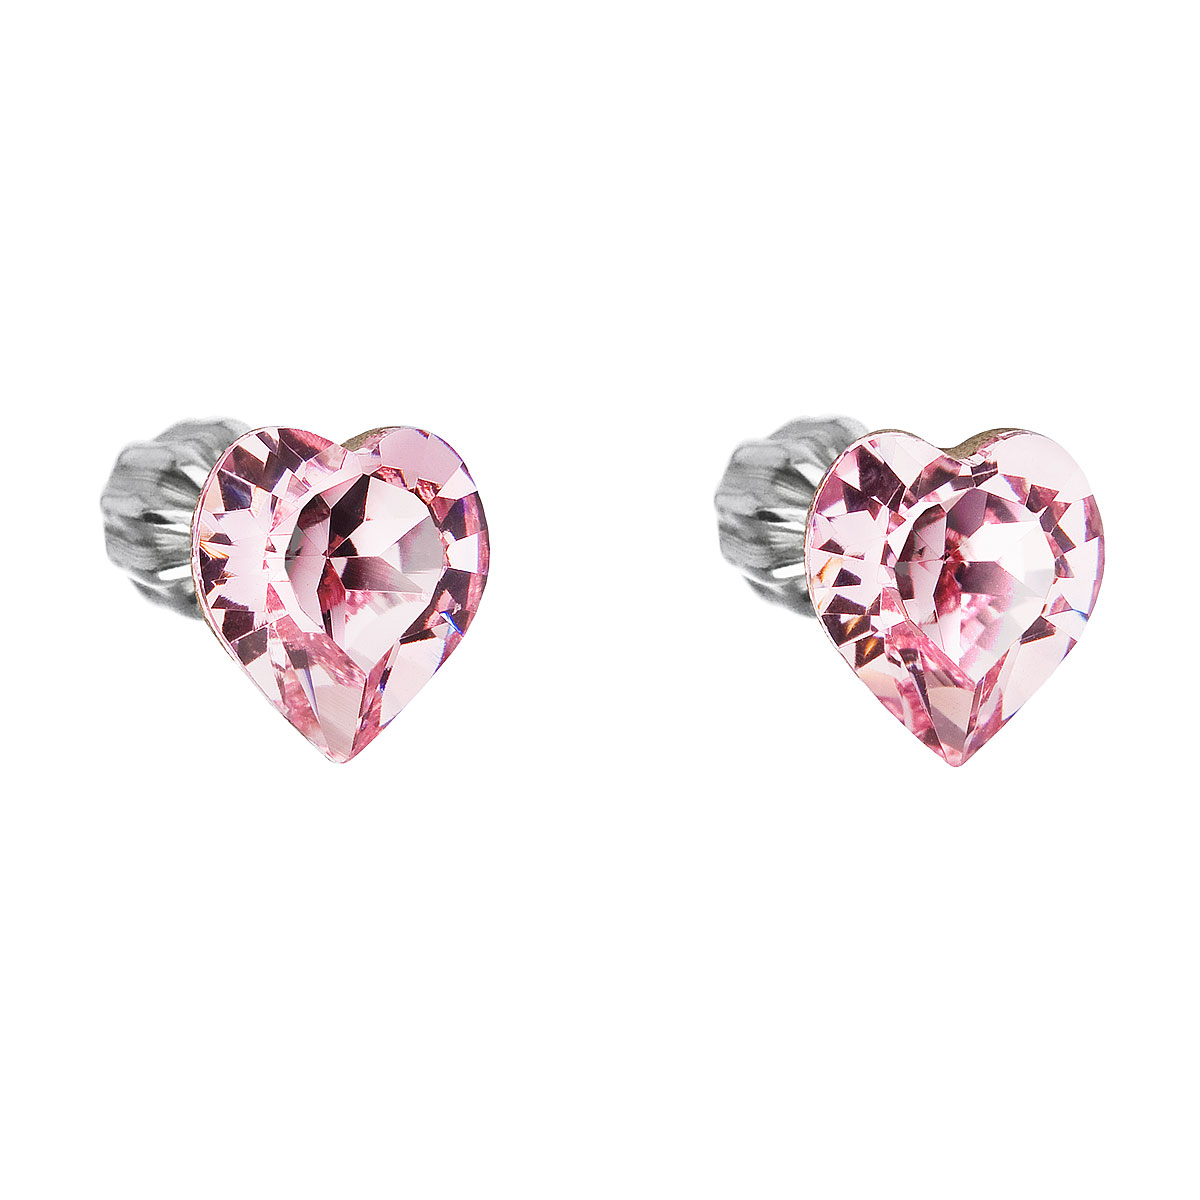 Evolution Group Stříbrné náušnice pecka s krystaly Swarovski růžové srdce 31139.3